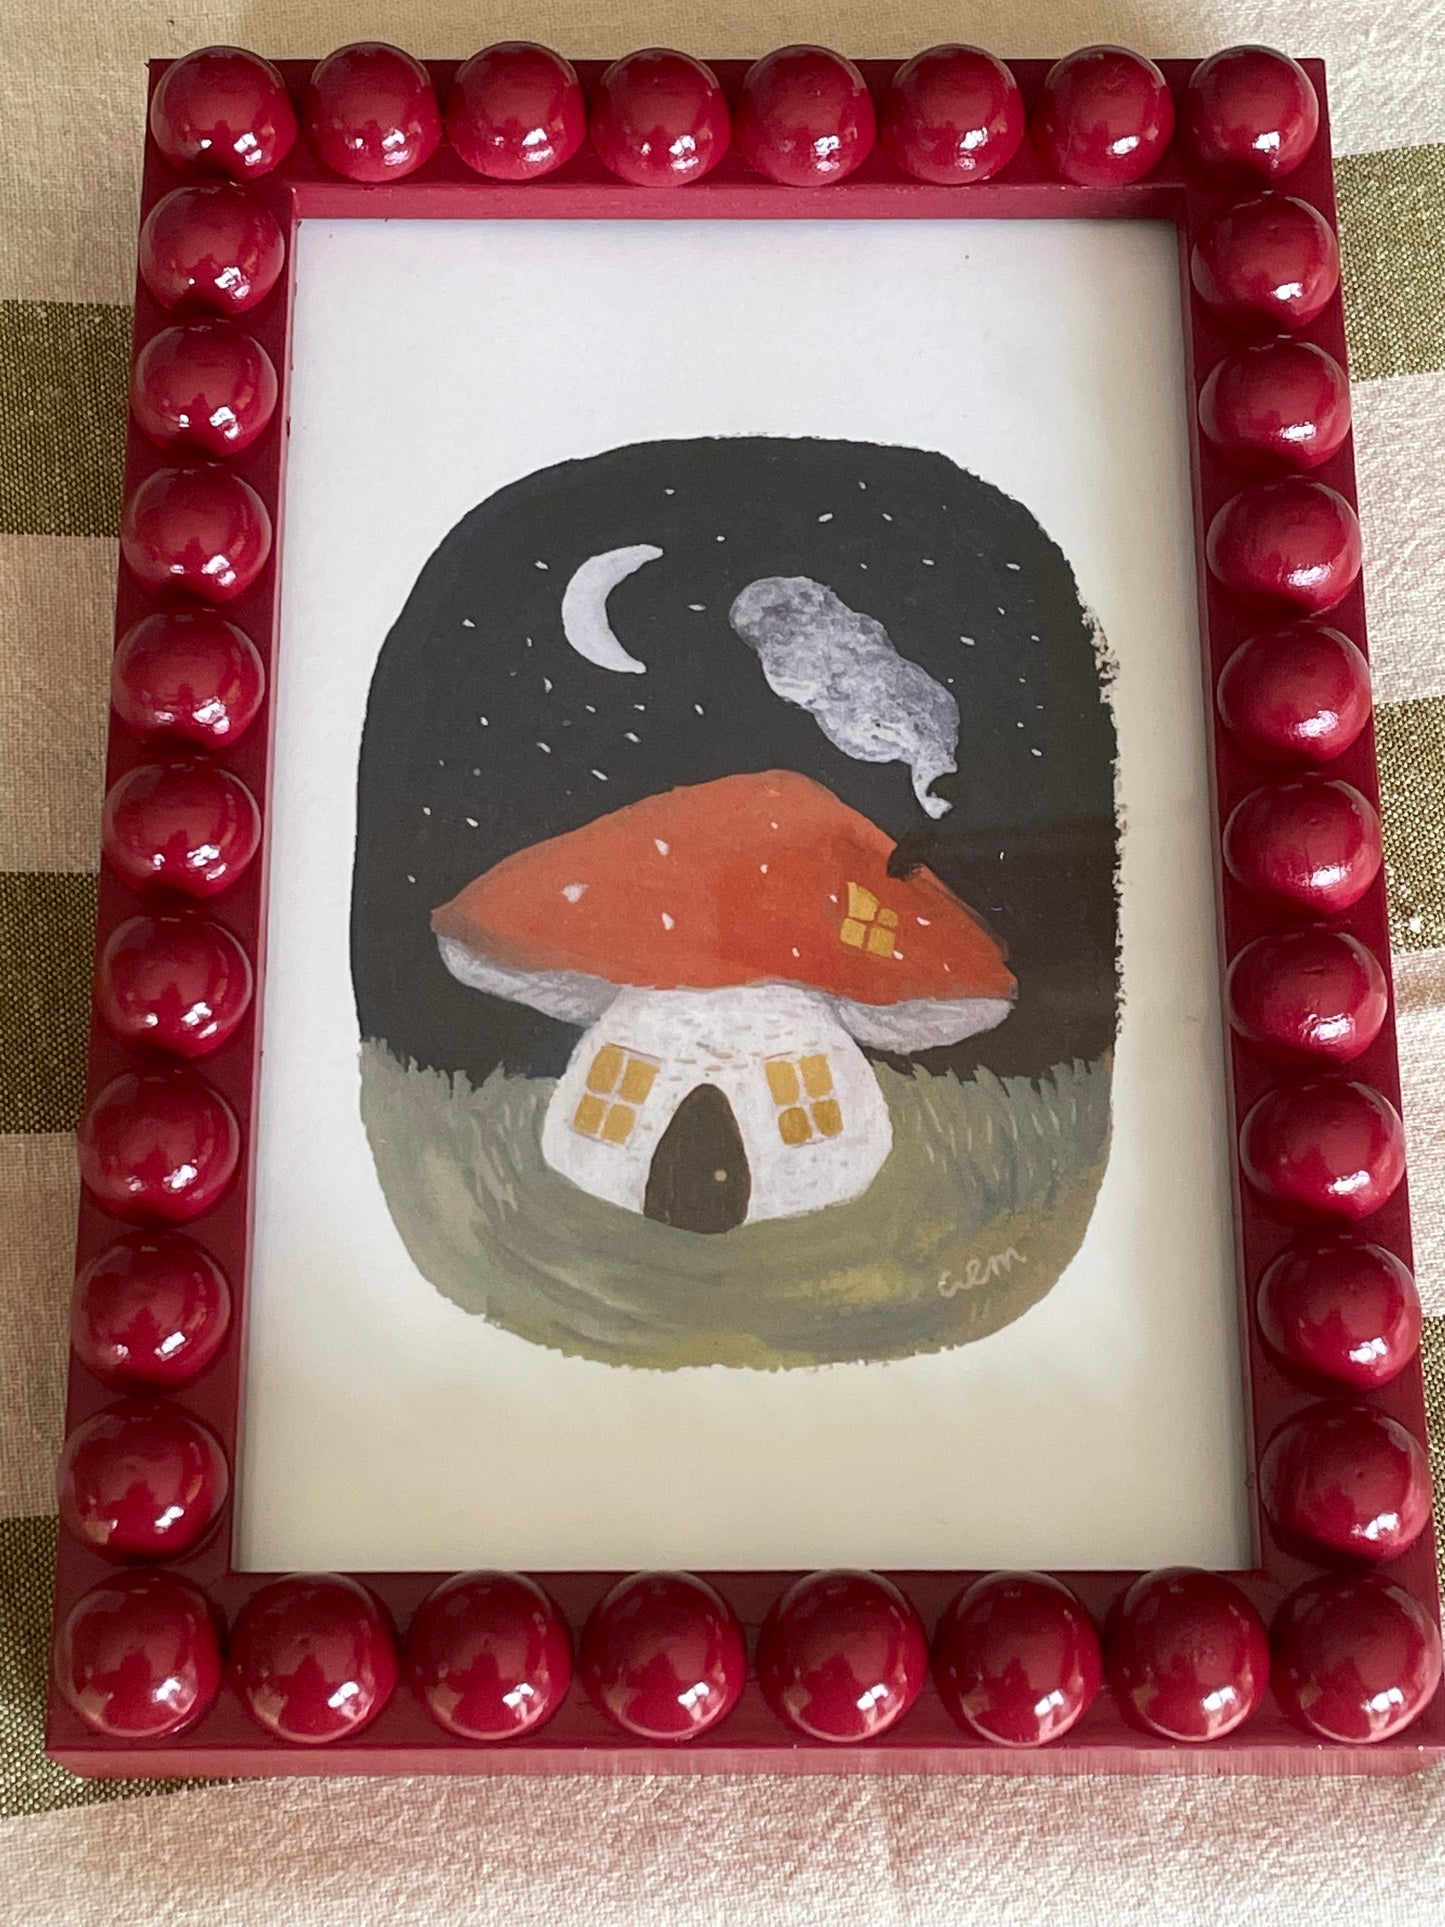 Berry Bobbin Bobble Frame & Mushroom print